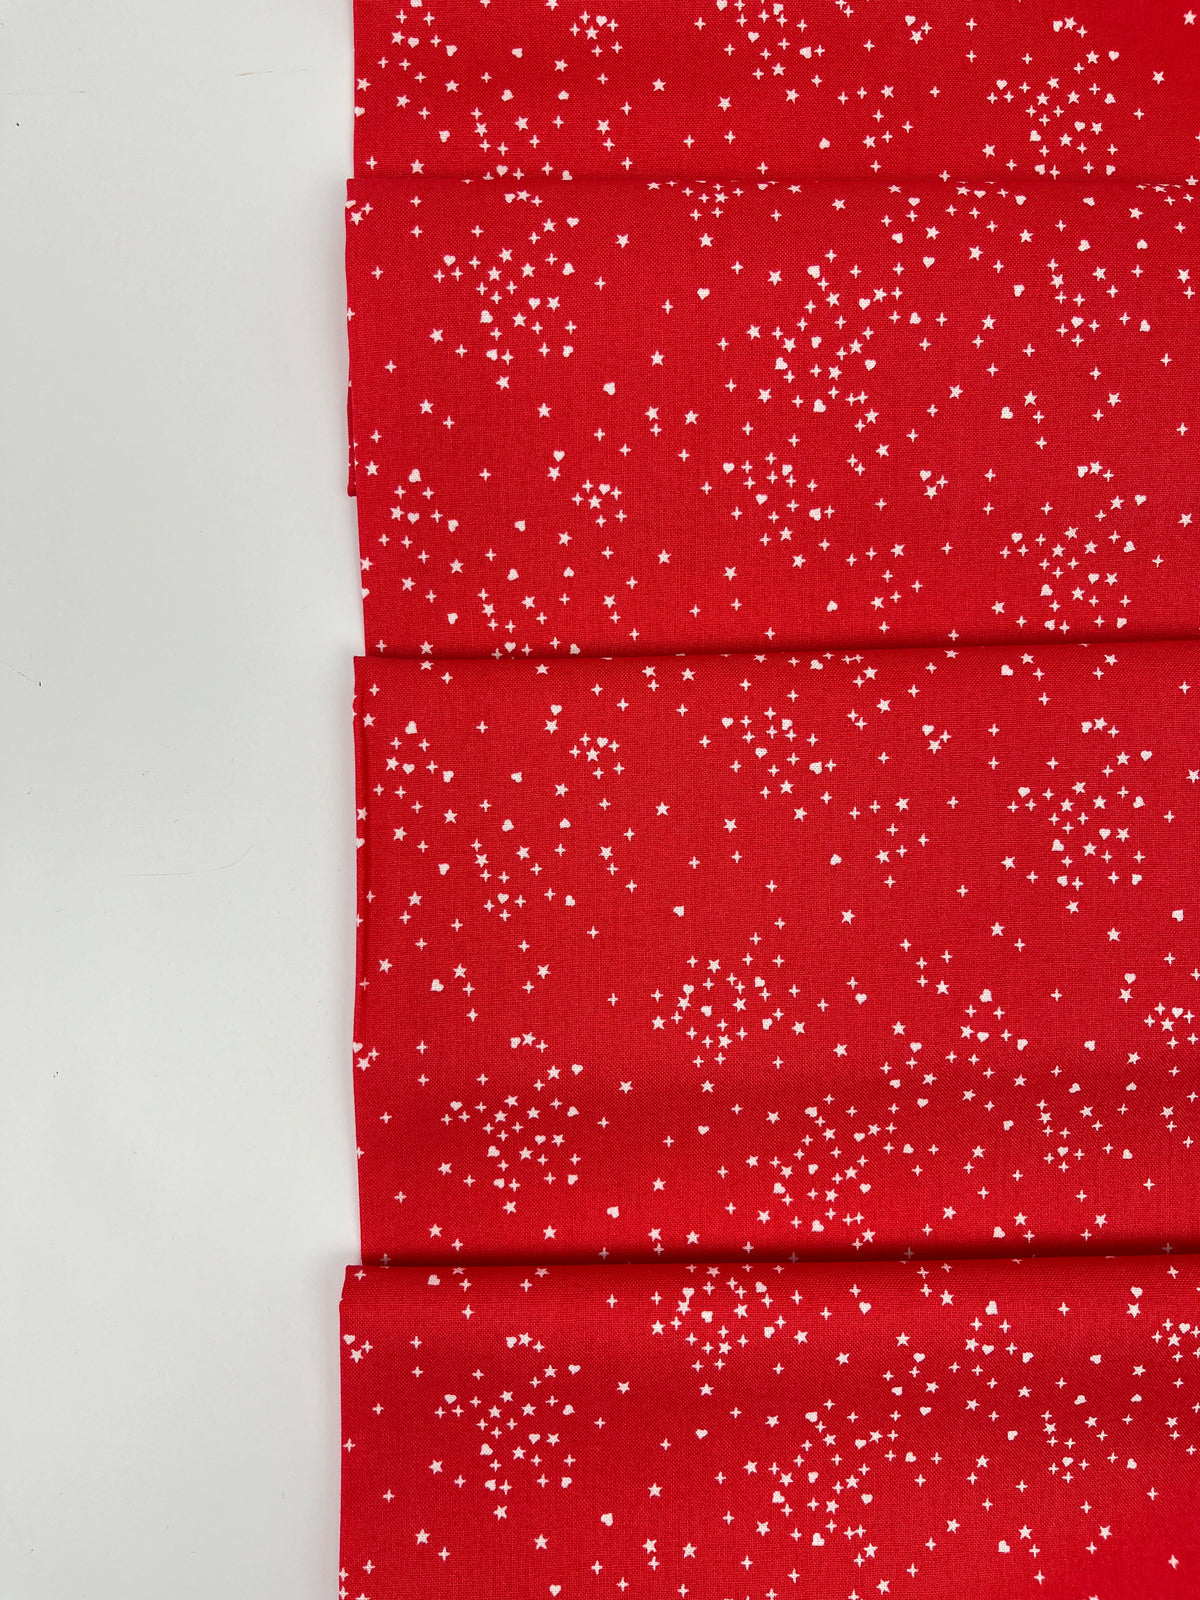 Hearts & Stars // Red // Andover Fabrics